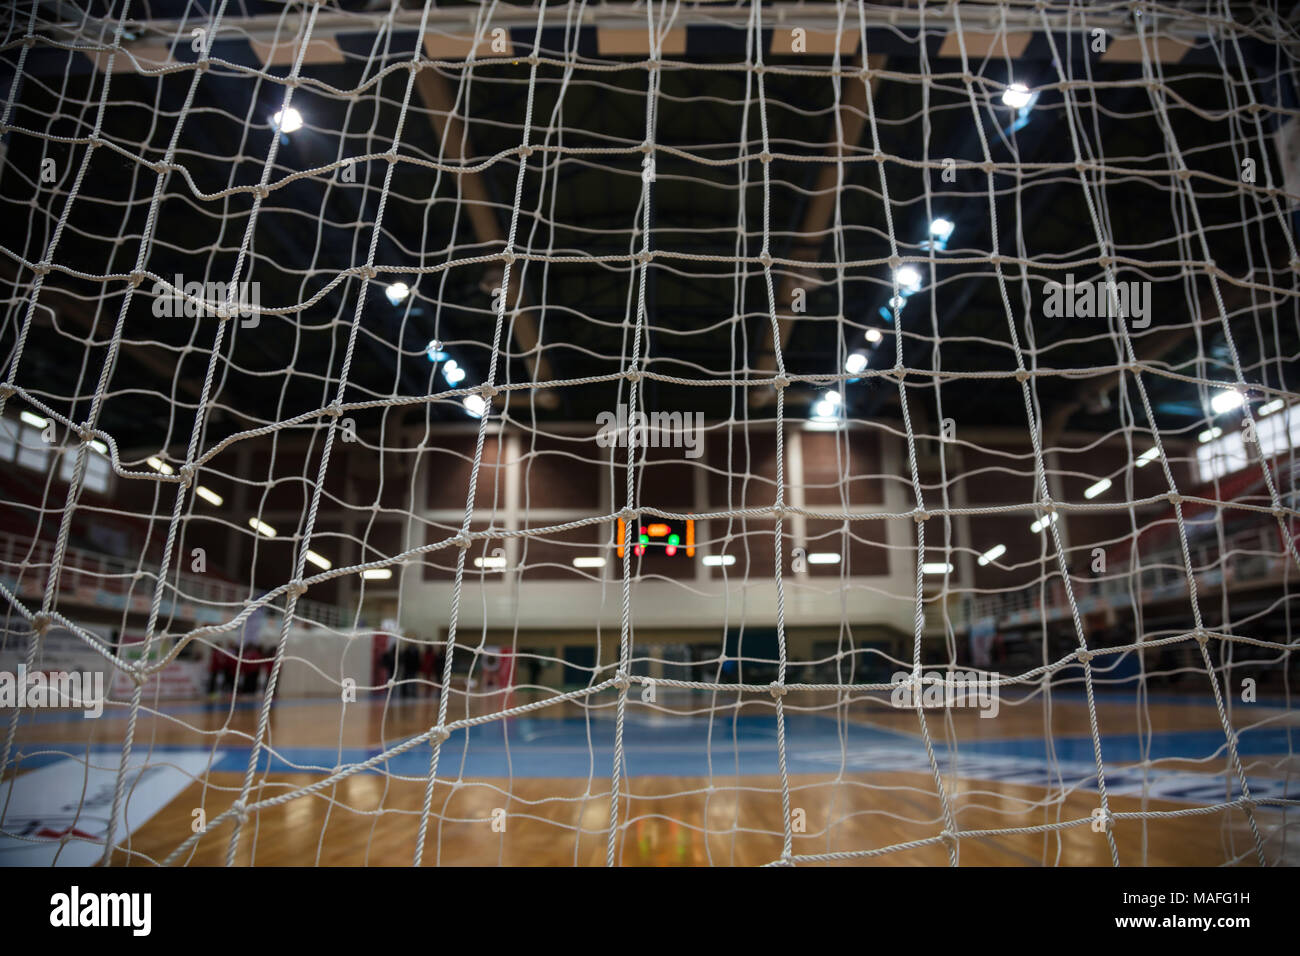 Handball Konzept. Close up Ziel post Netze von hinten anzuzeigen. Verschwommen Hof, Sportler und Elektronische Anzeigetafel Hintergrund. Stockfoto